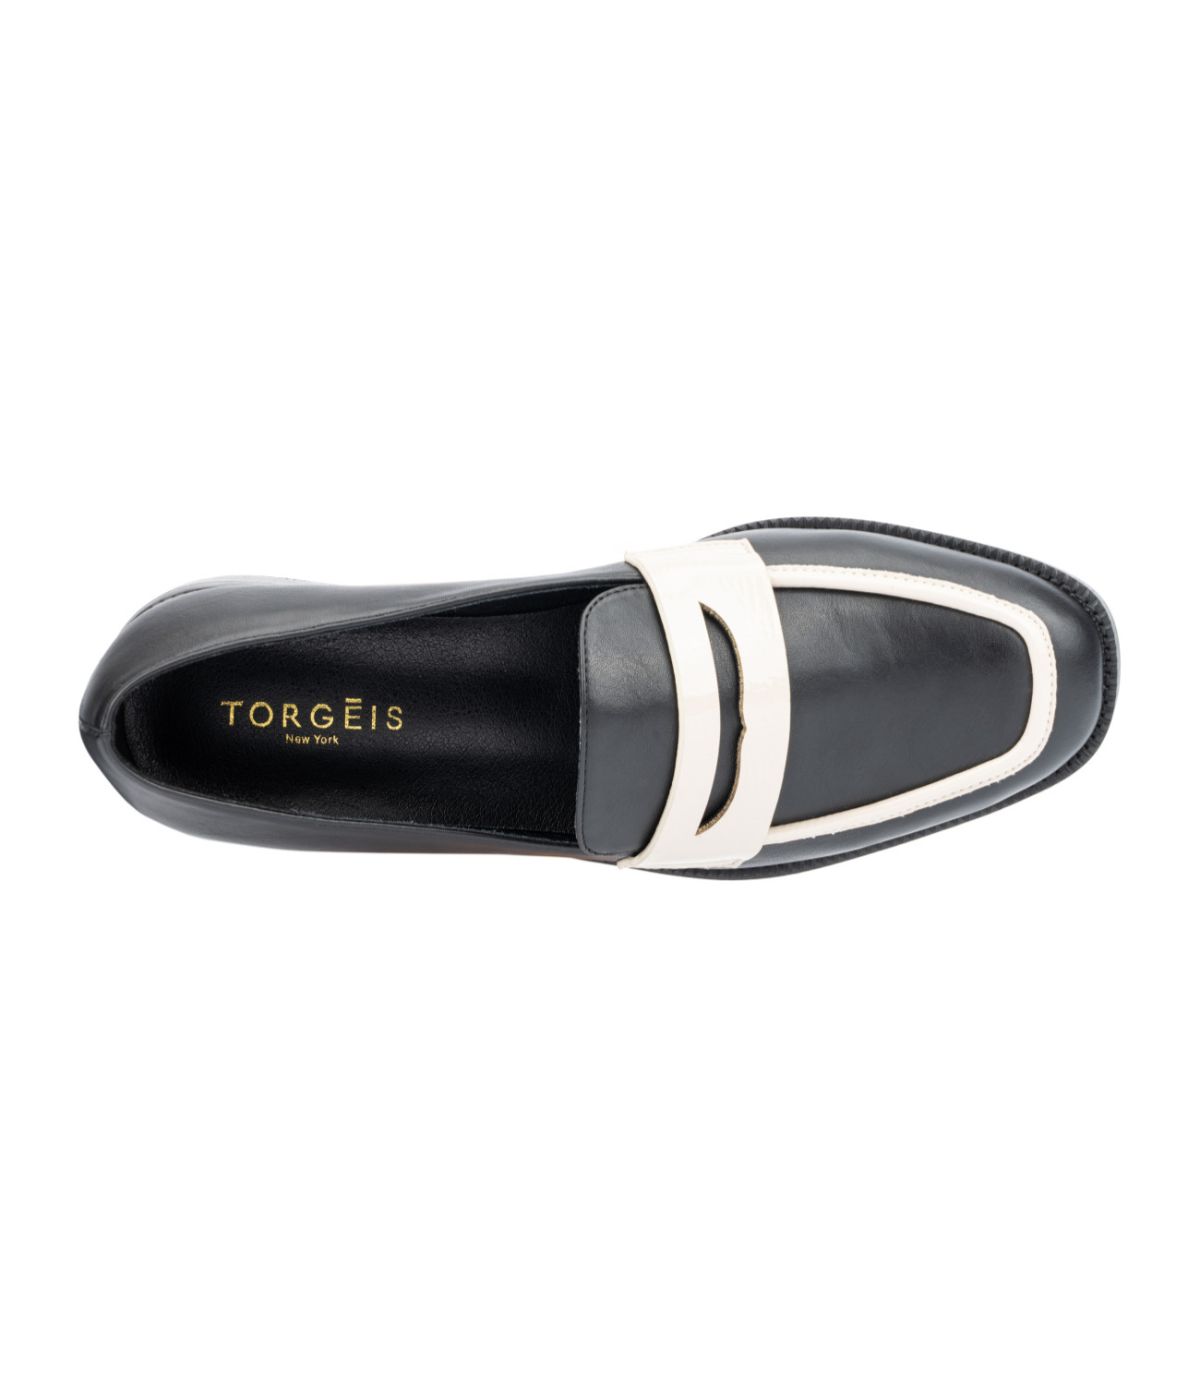 Torgeis Women's Teagan Loafers Black & White